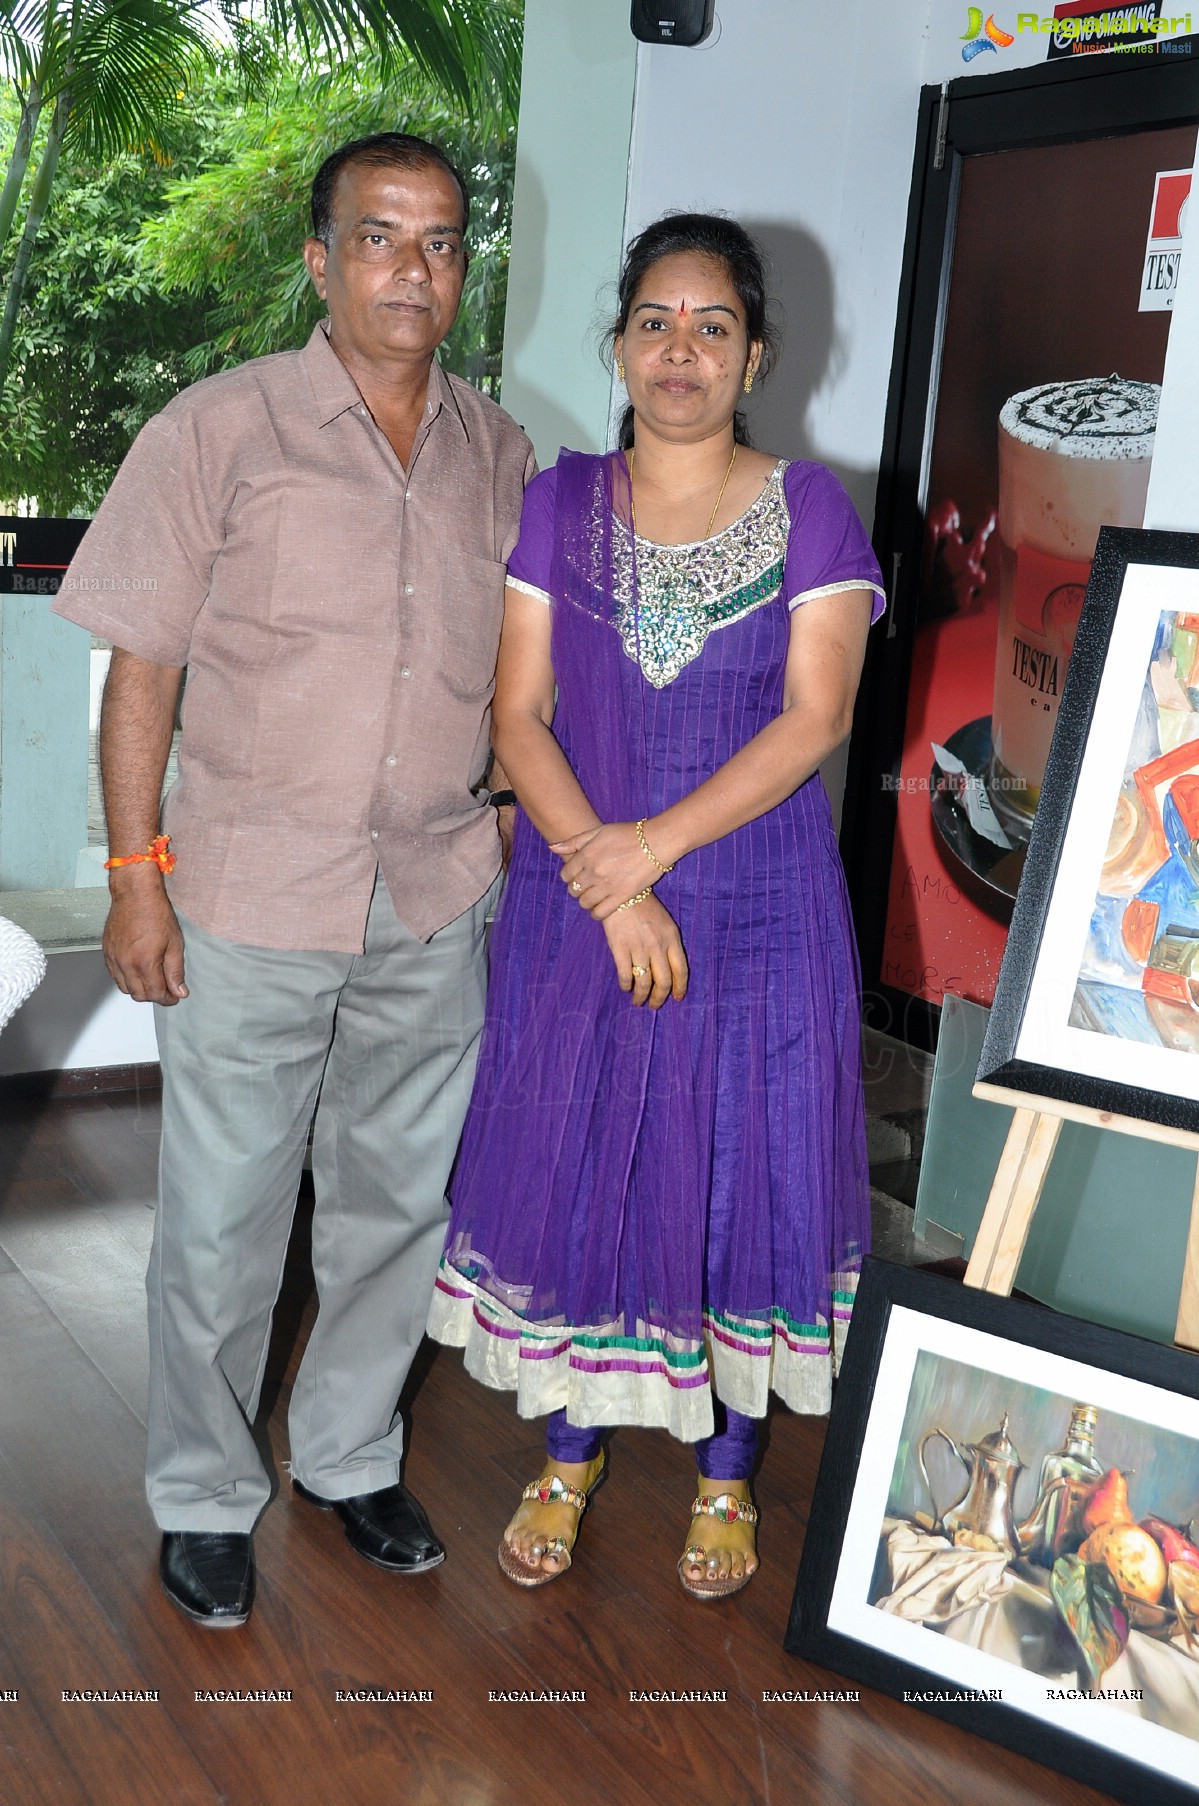 Hari Srinivas Art Exhibition at Testa Rossa Caffe, Hyd